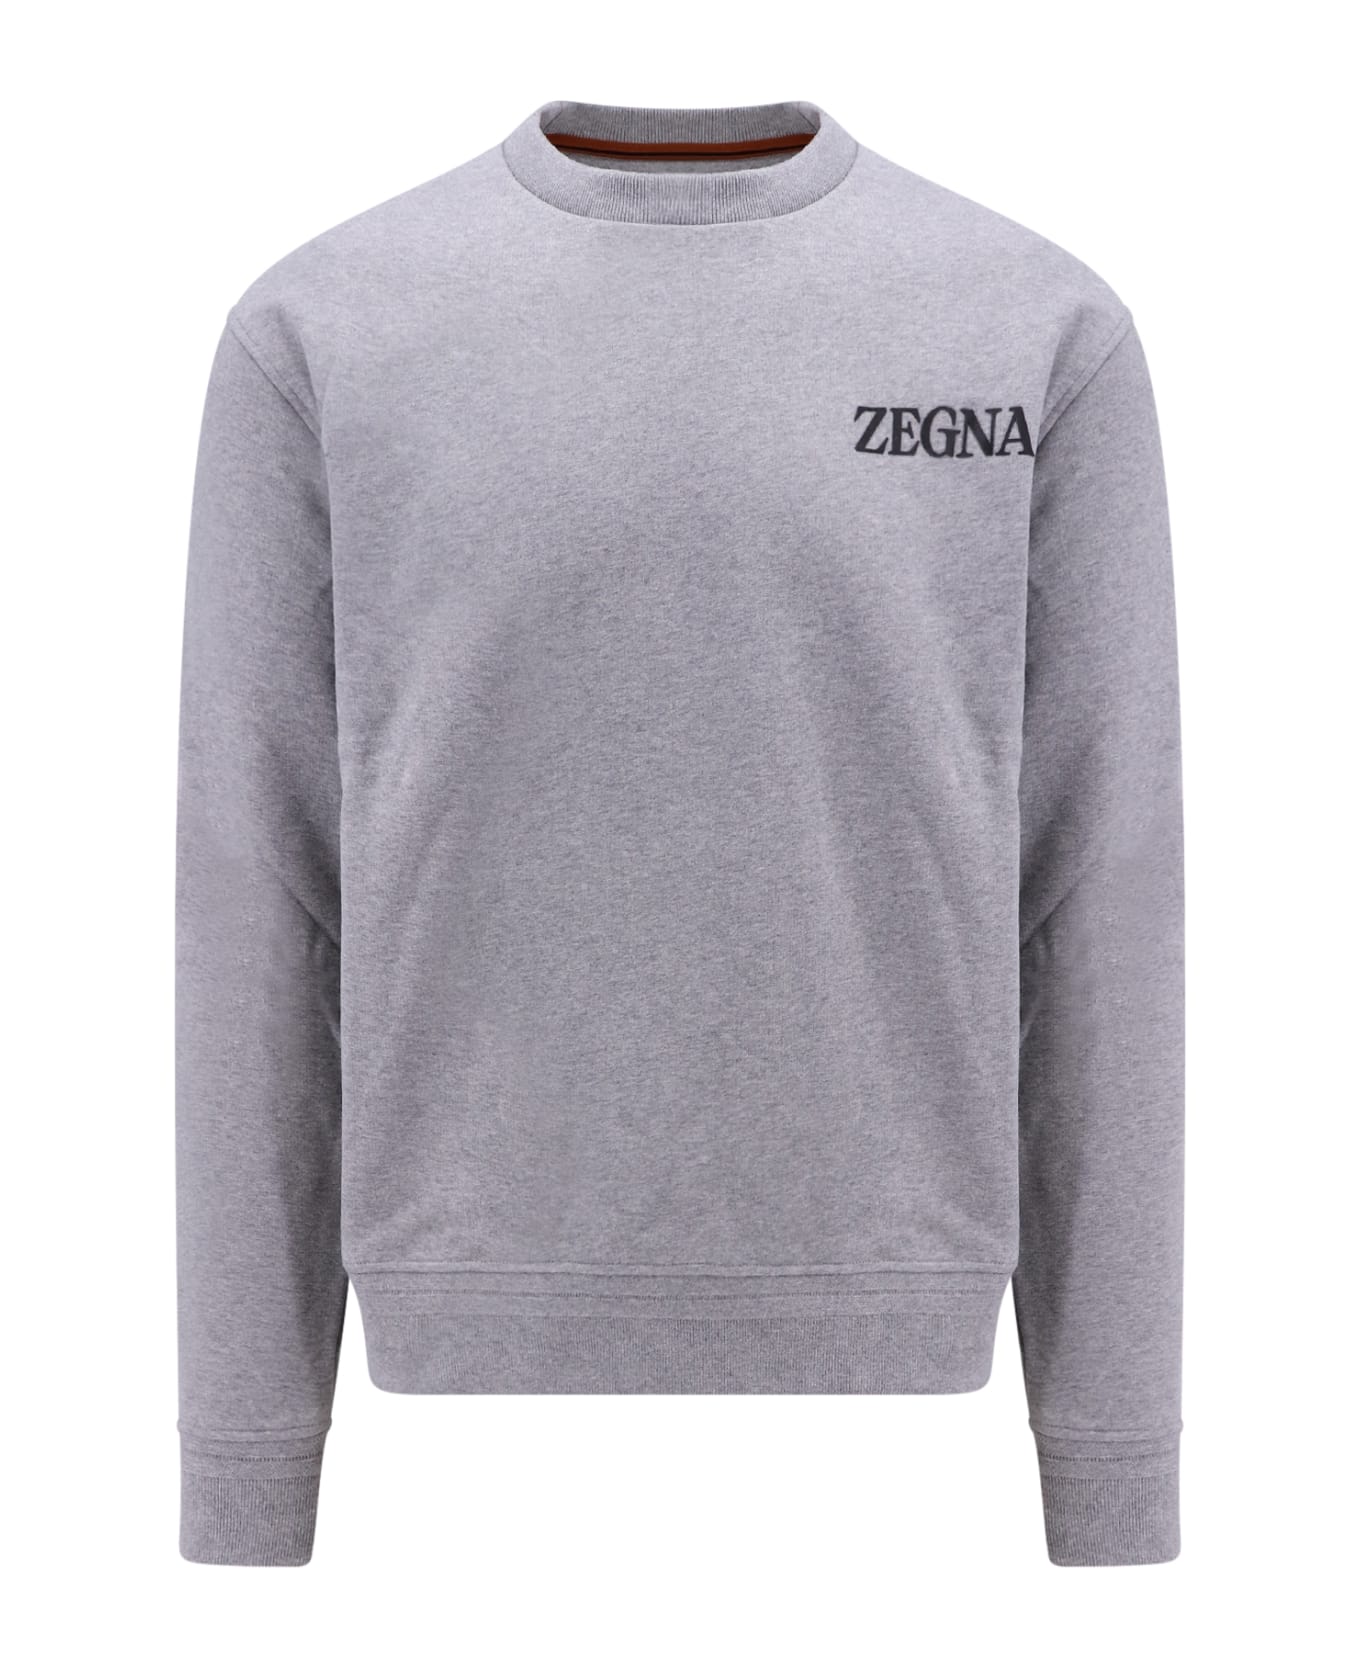 Zegna #usetheexisting Sweatshirt - Grey